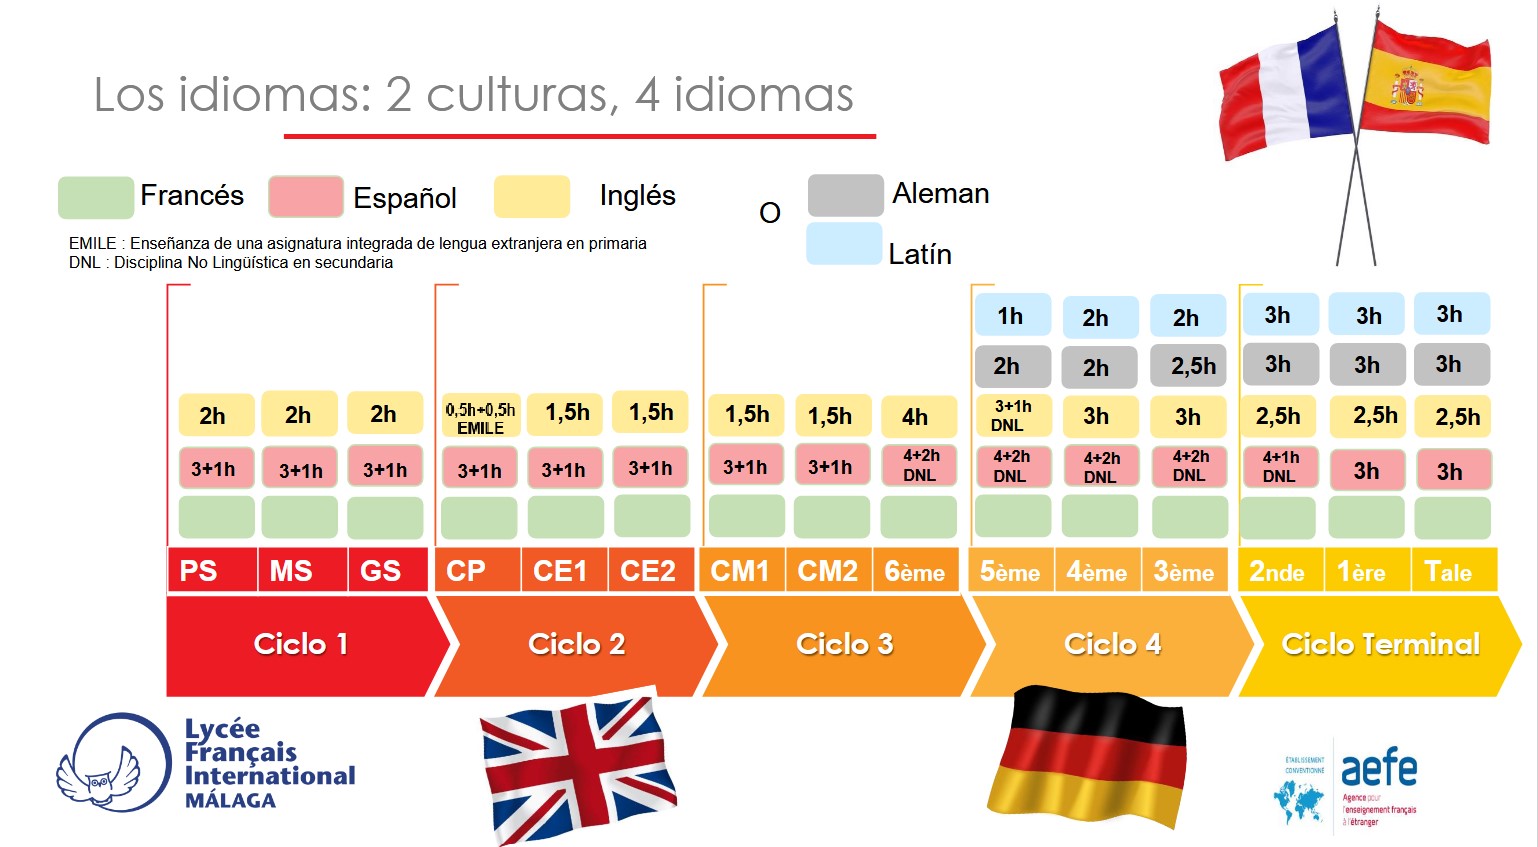 Los idiomas: 2 culturas, 4 idiomas